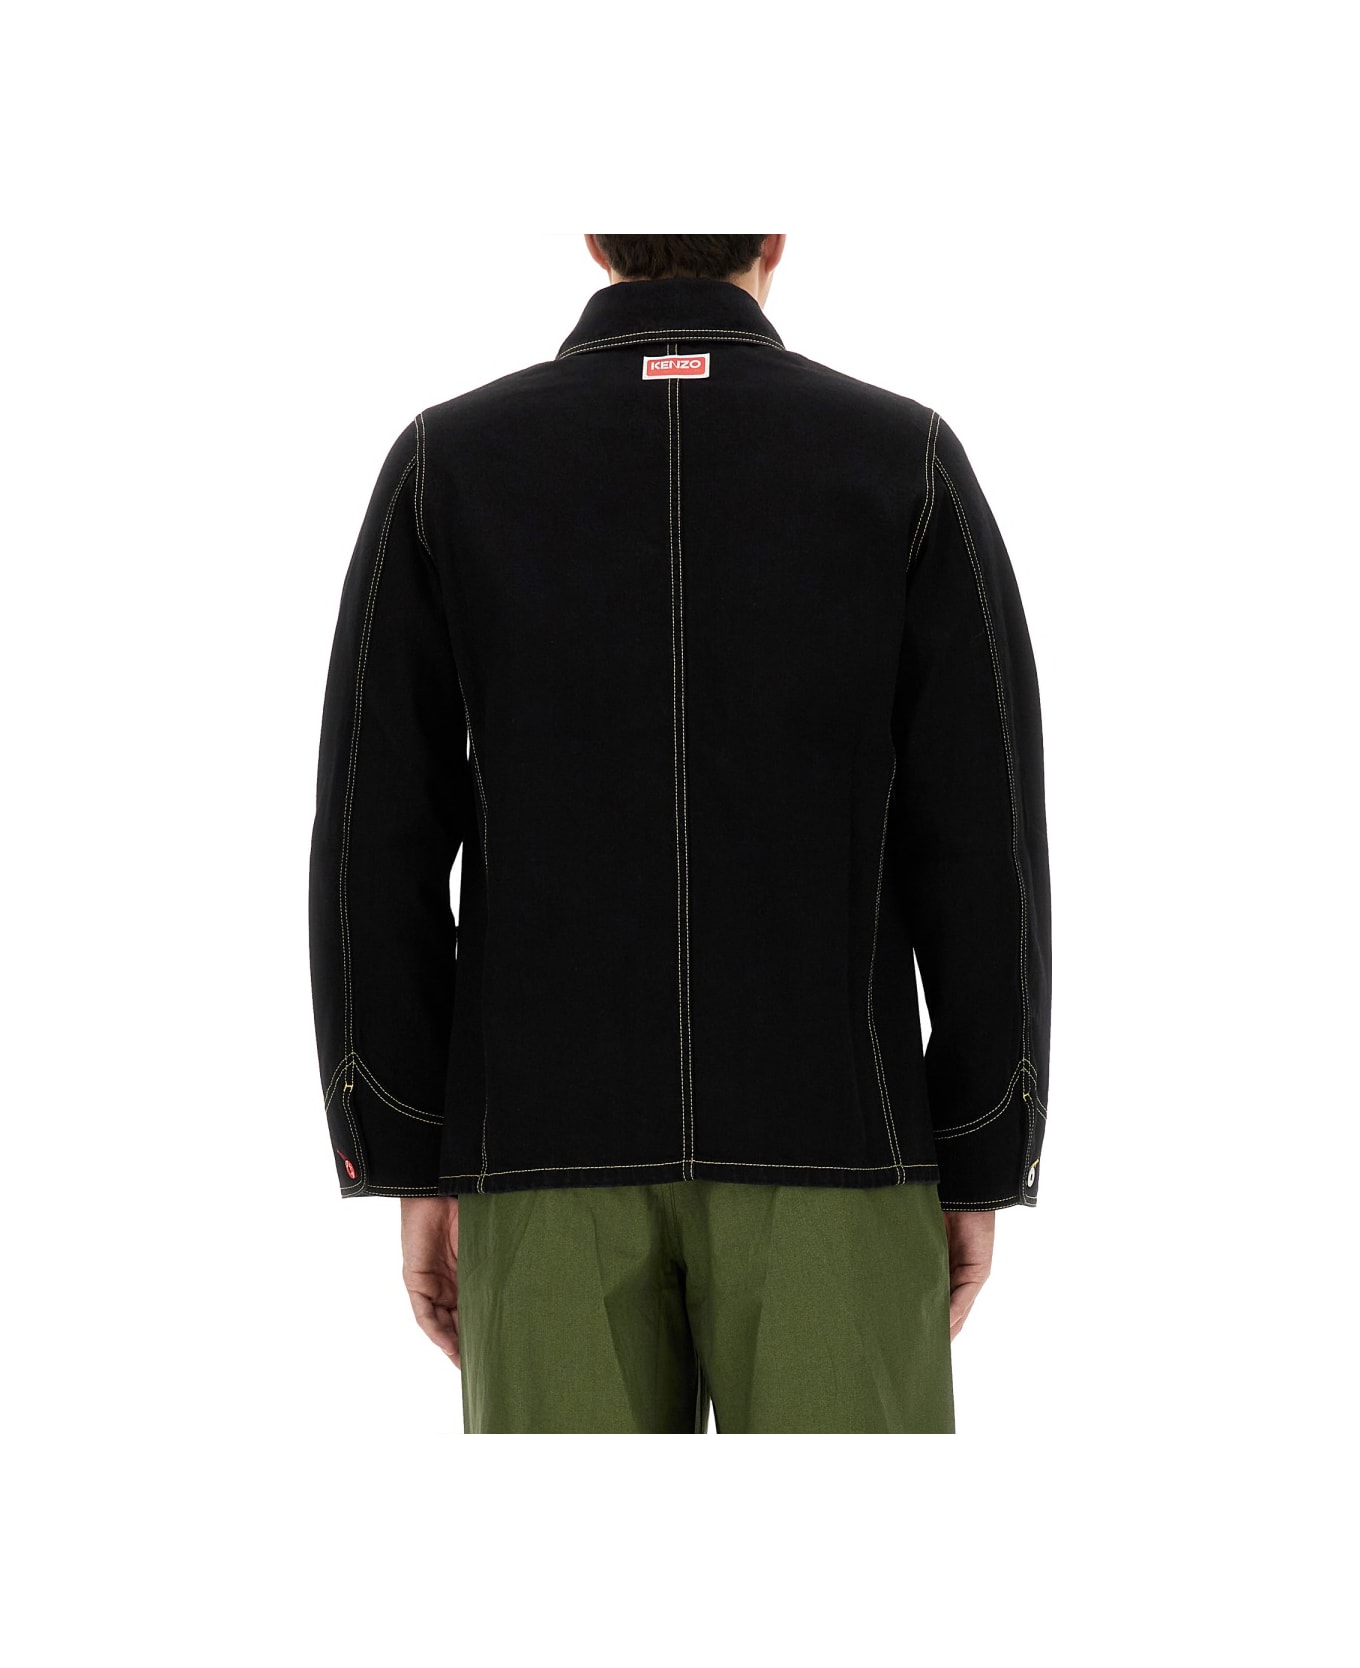 Kenzo Workwear Jacket - BLACK ジャケット